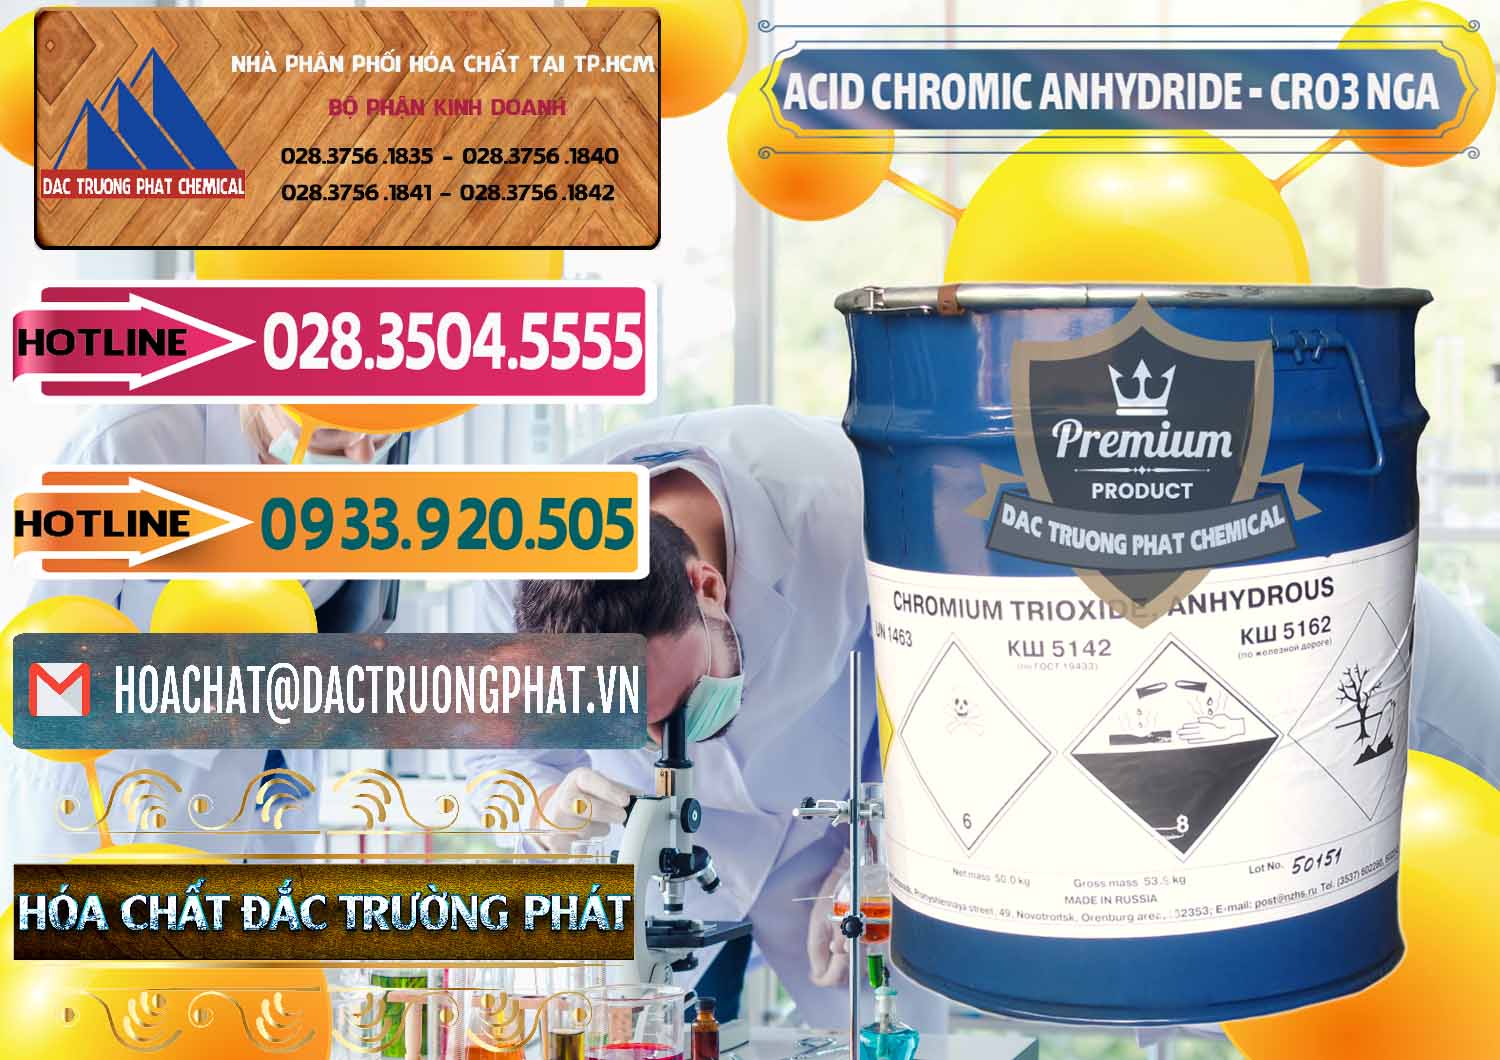 Công ty kinh doanh _ bán Acid Chromic Anhydride - Cromic CRO3 Nga Russia - 0006 - Cty nhập khẩu ( phân phối ) hóa chất tại TP.HCM - dactruongphat.vn